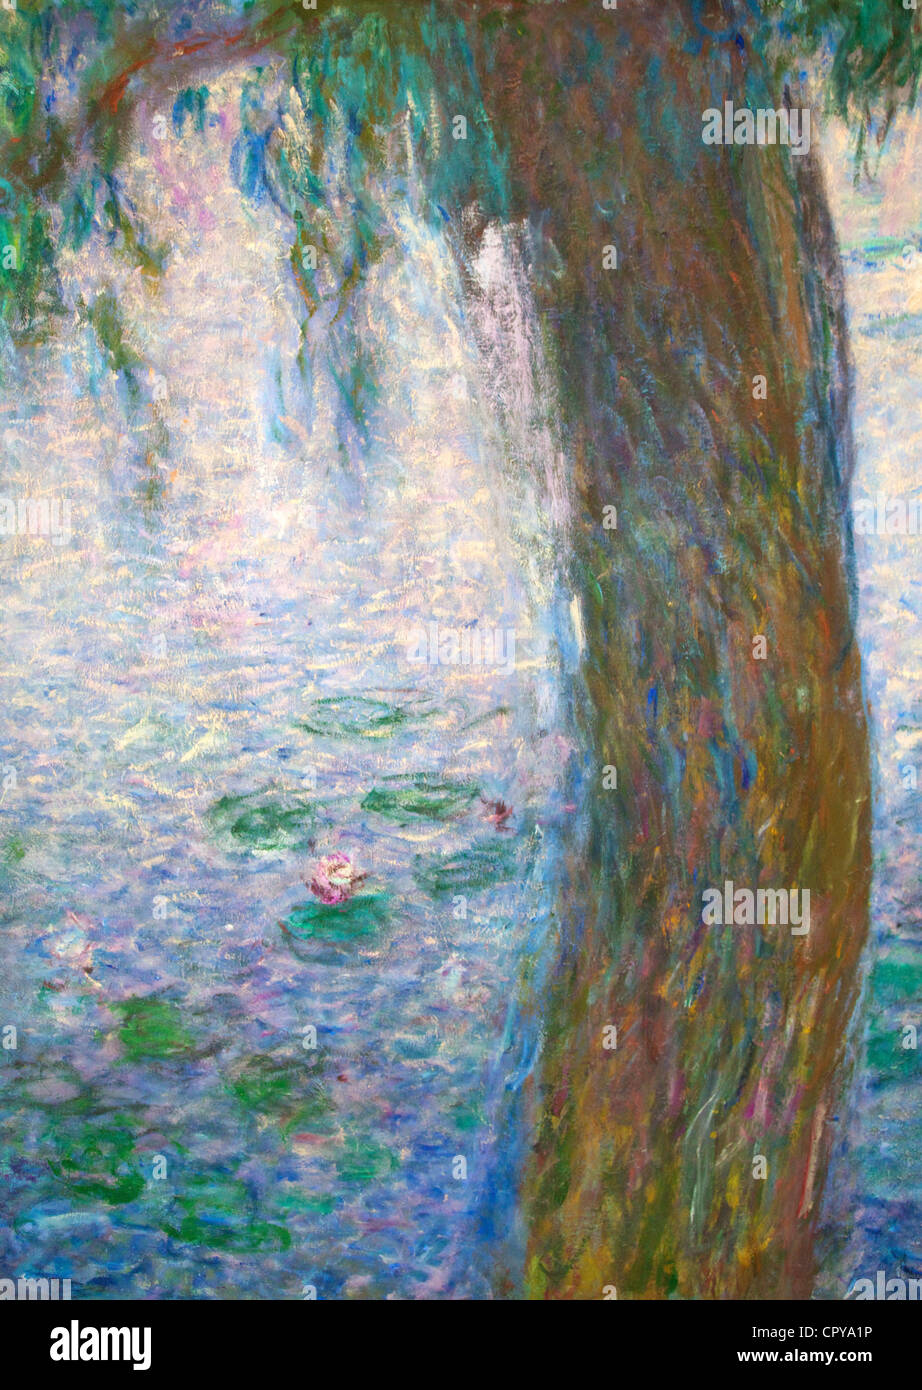 Detalle de lirios de agua por Claude Monet, Musée de l'Orangerie Museo, París, Francia, Europa Foto de stock